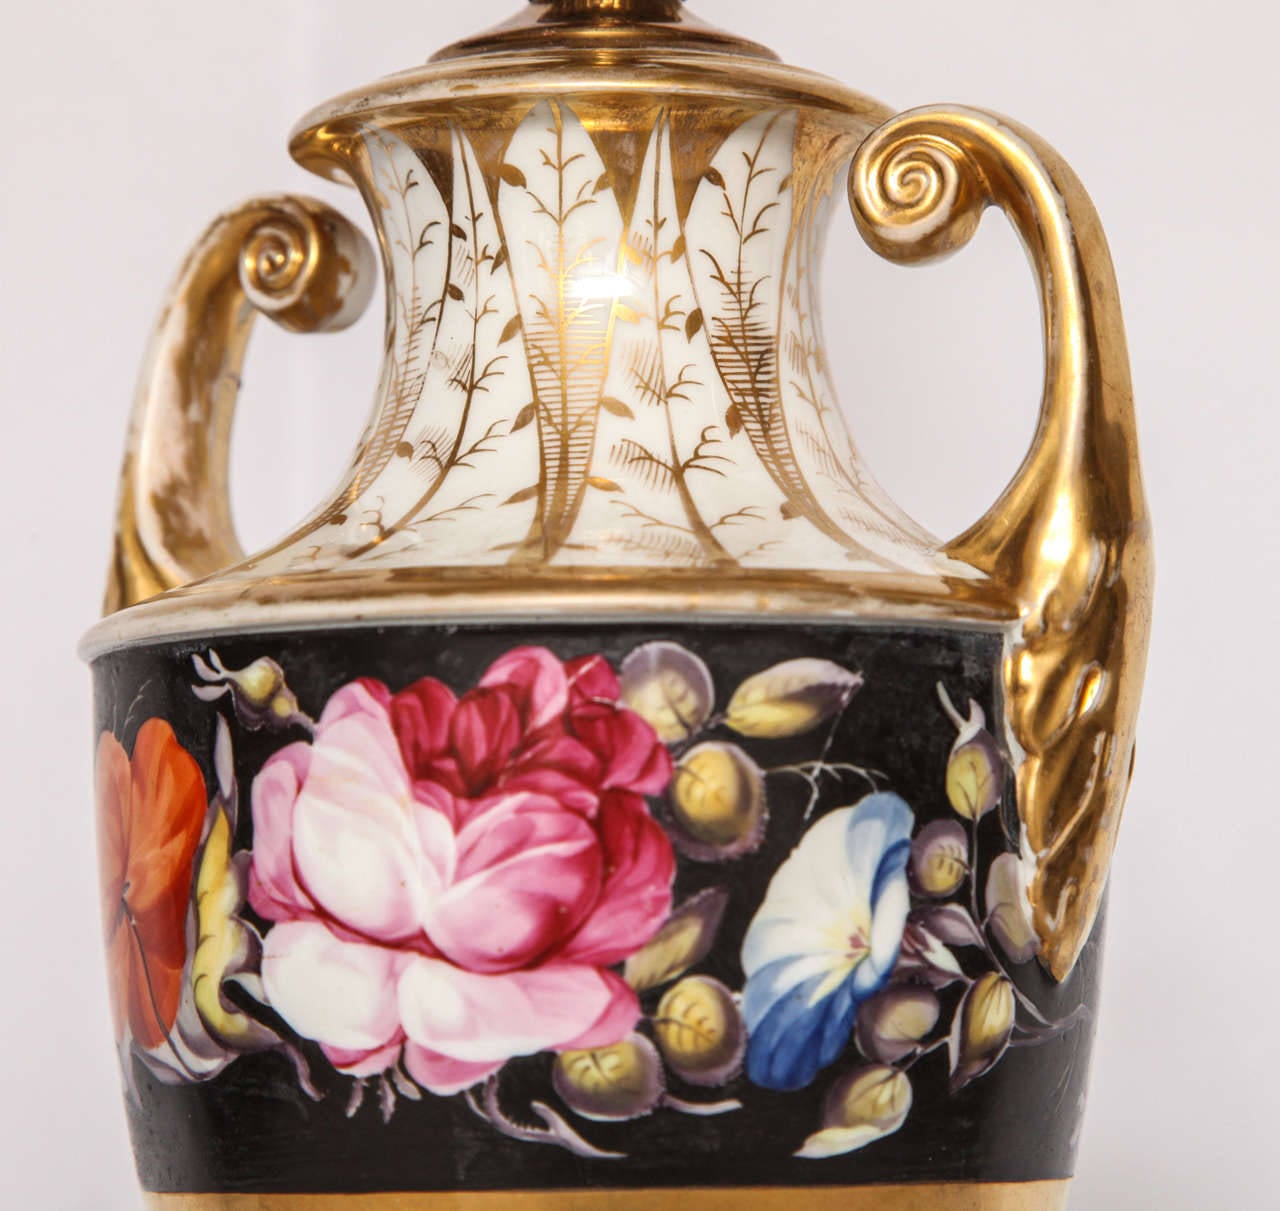 European Floral Porcelain Urn-Form Lamp For Sale